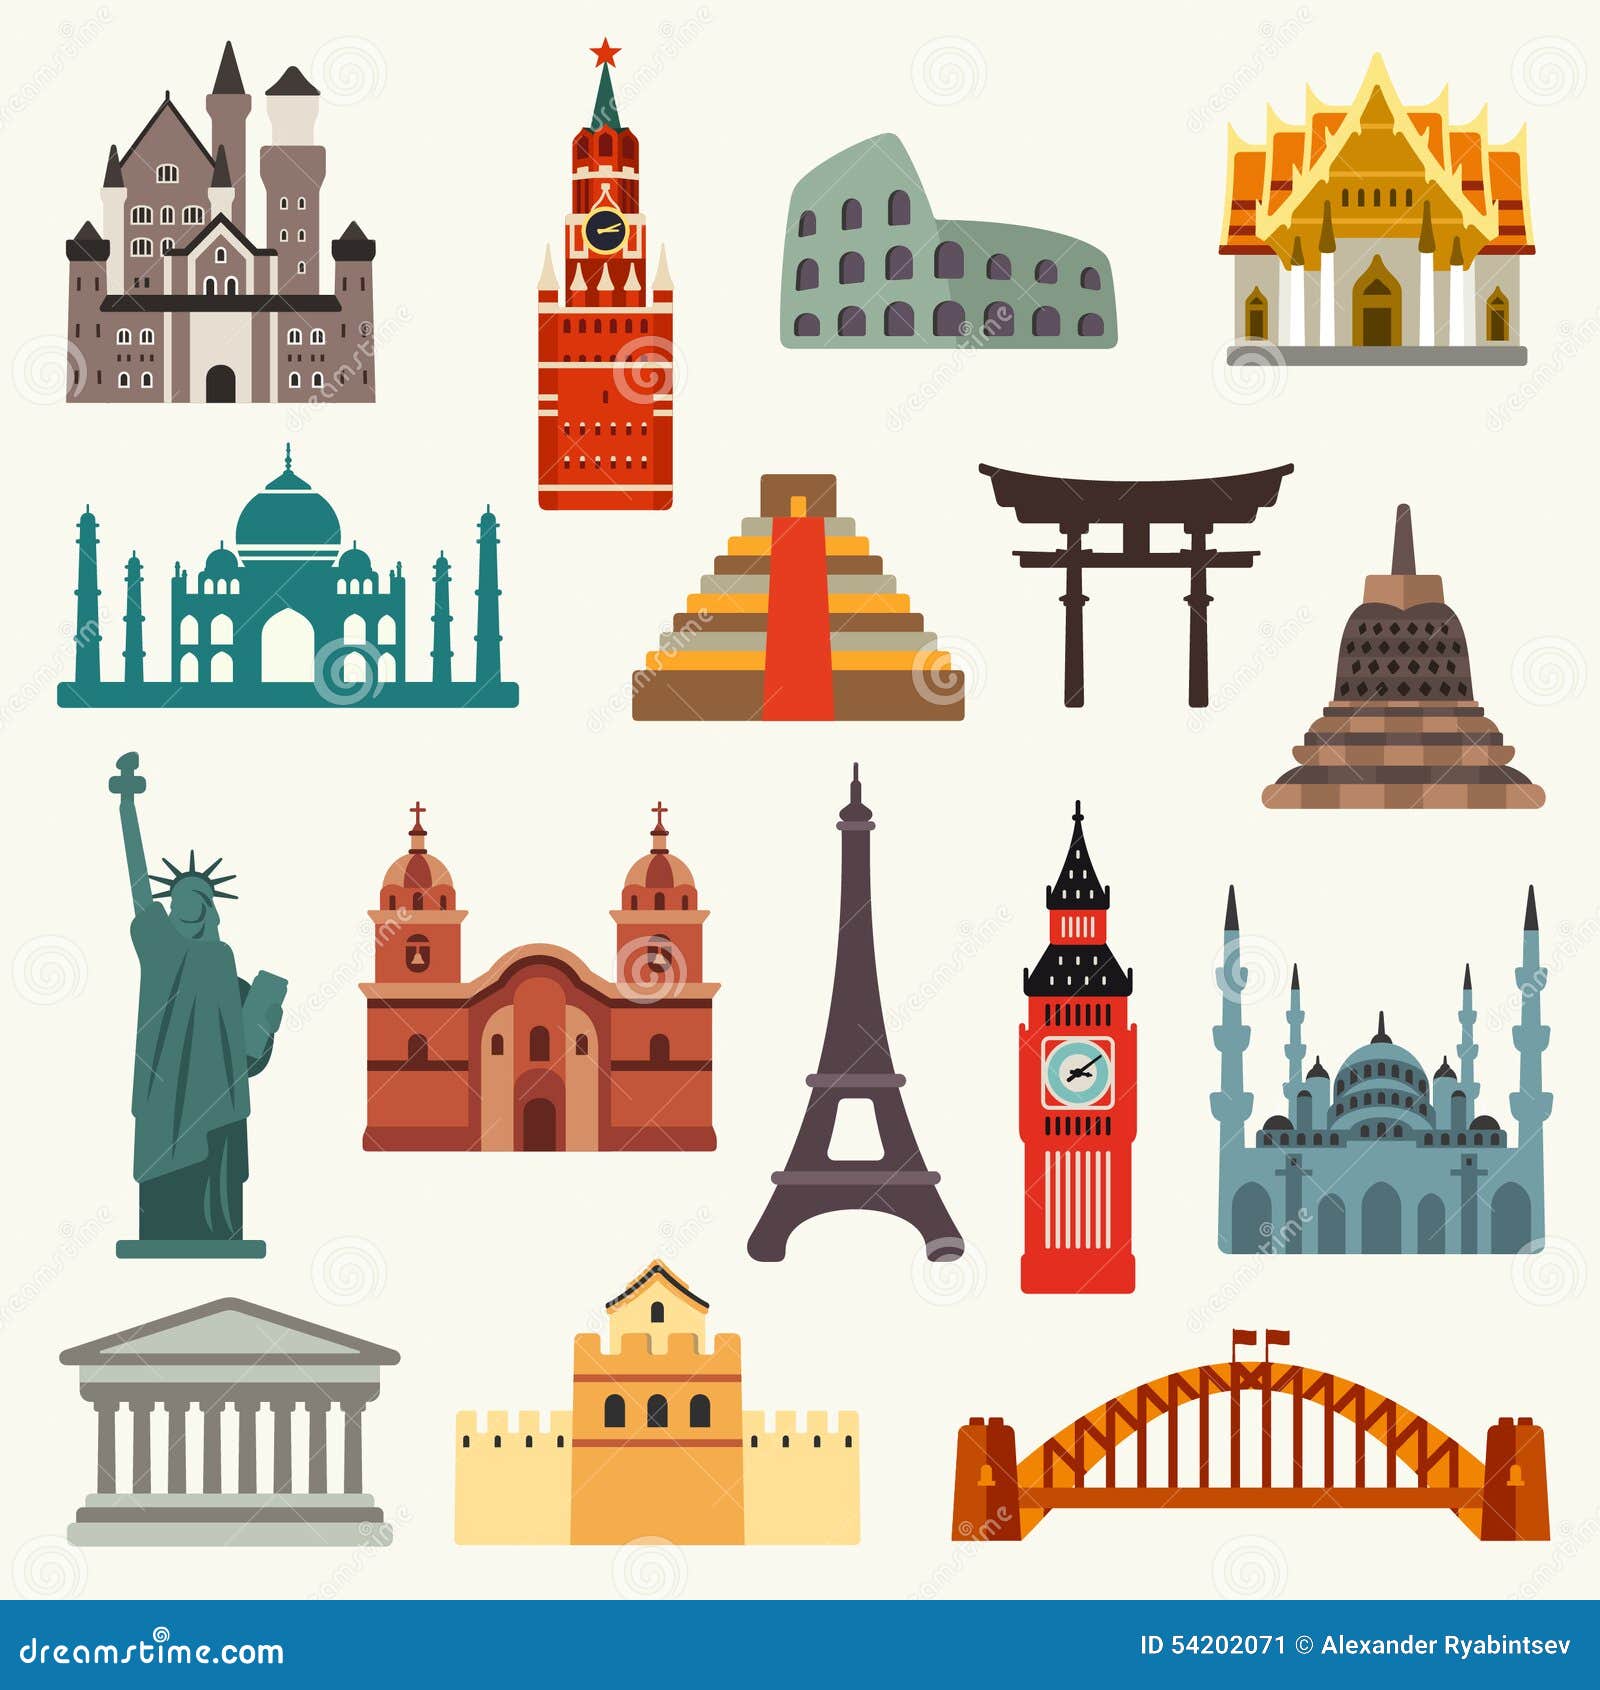 world landmarks icons